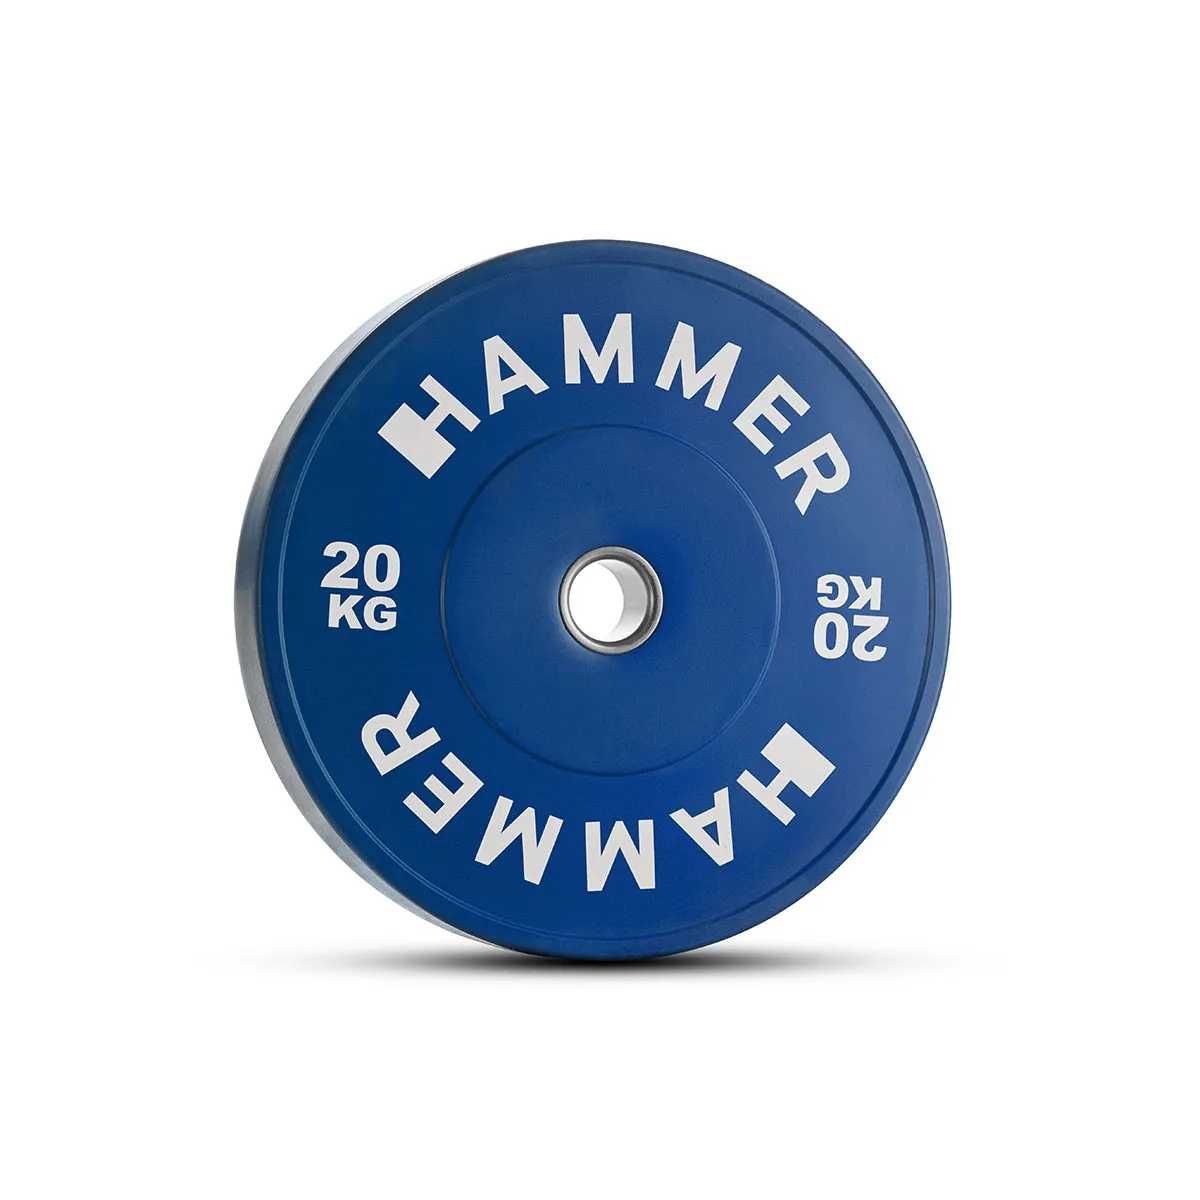 Obciążenia bumper 2,5 do 25 kg HAMMER 50mm